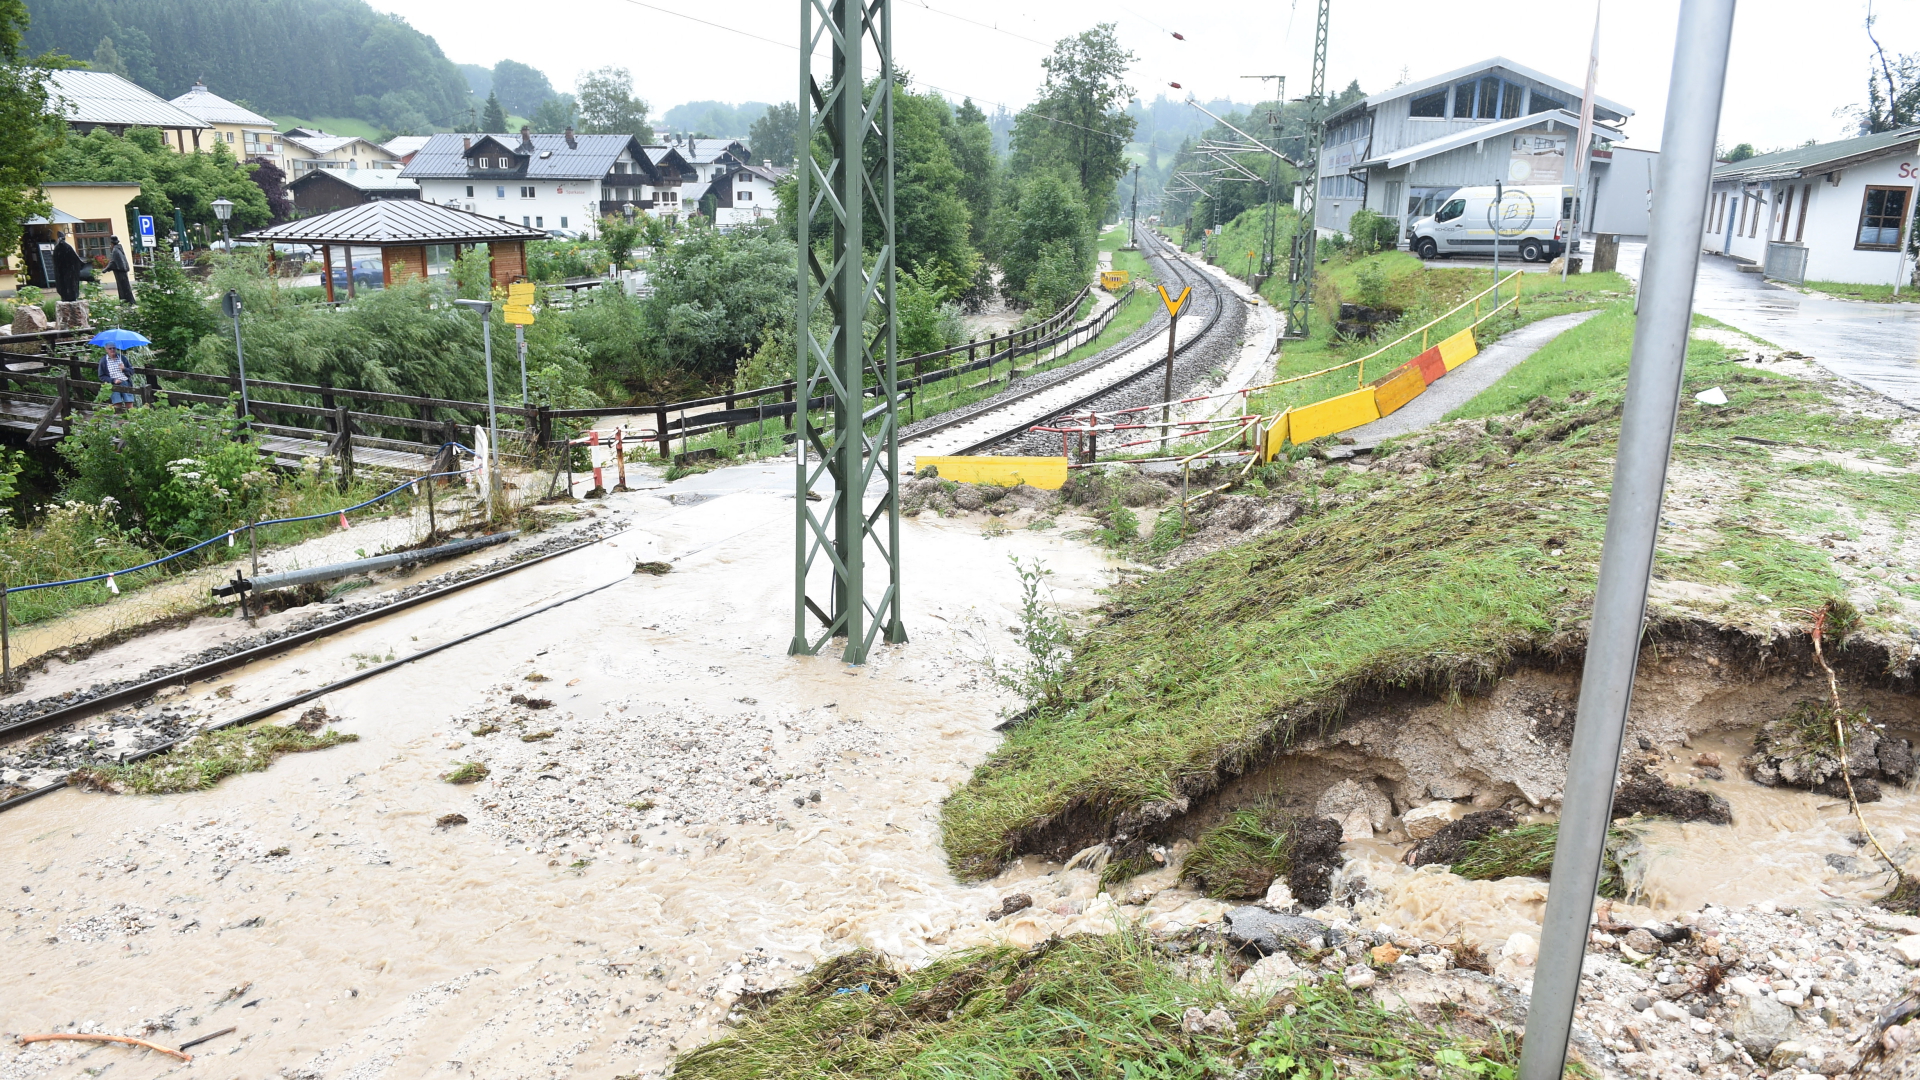 Überflutete Gleise am Bahnhof von Bischofswiesen (Archivbild) | dpa